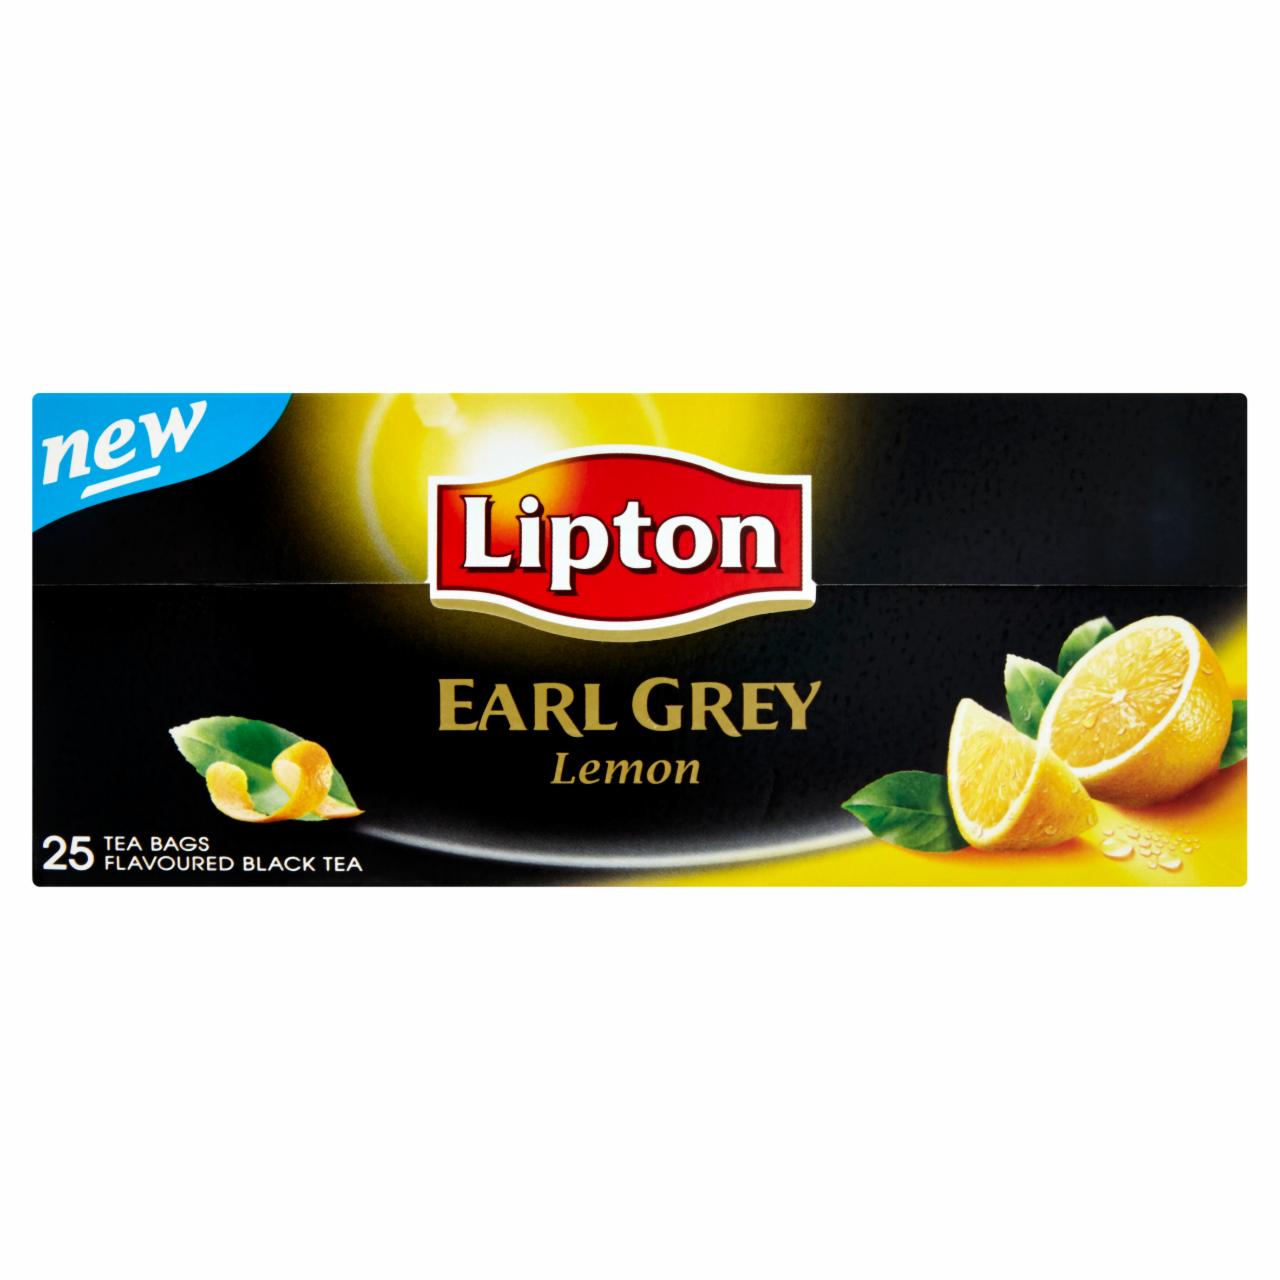 Képek - Lipton Earl Grey citrom ízű fekete tea 25 filter